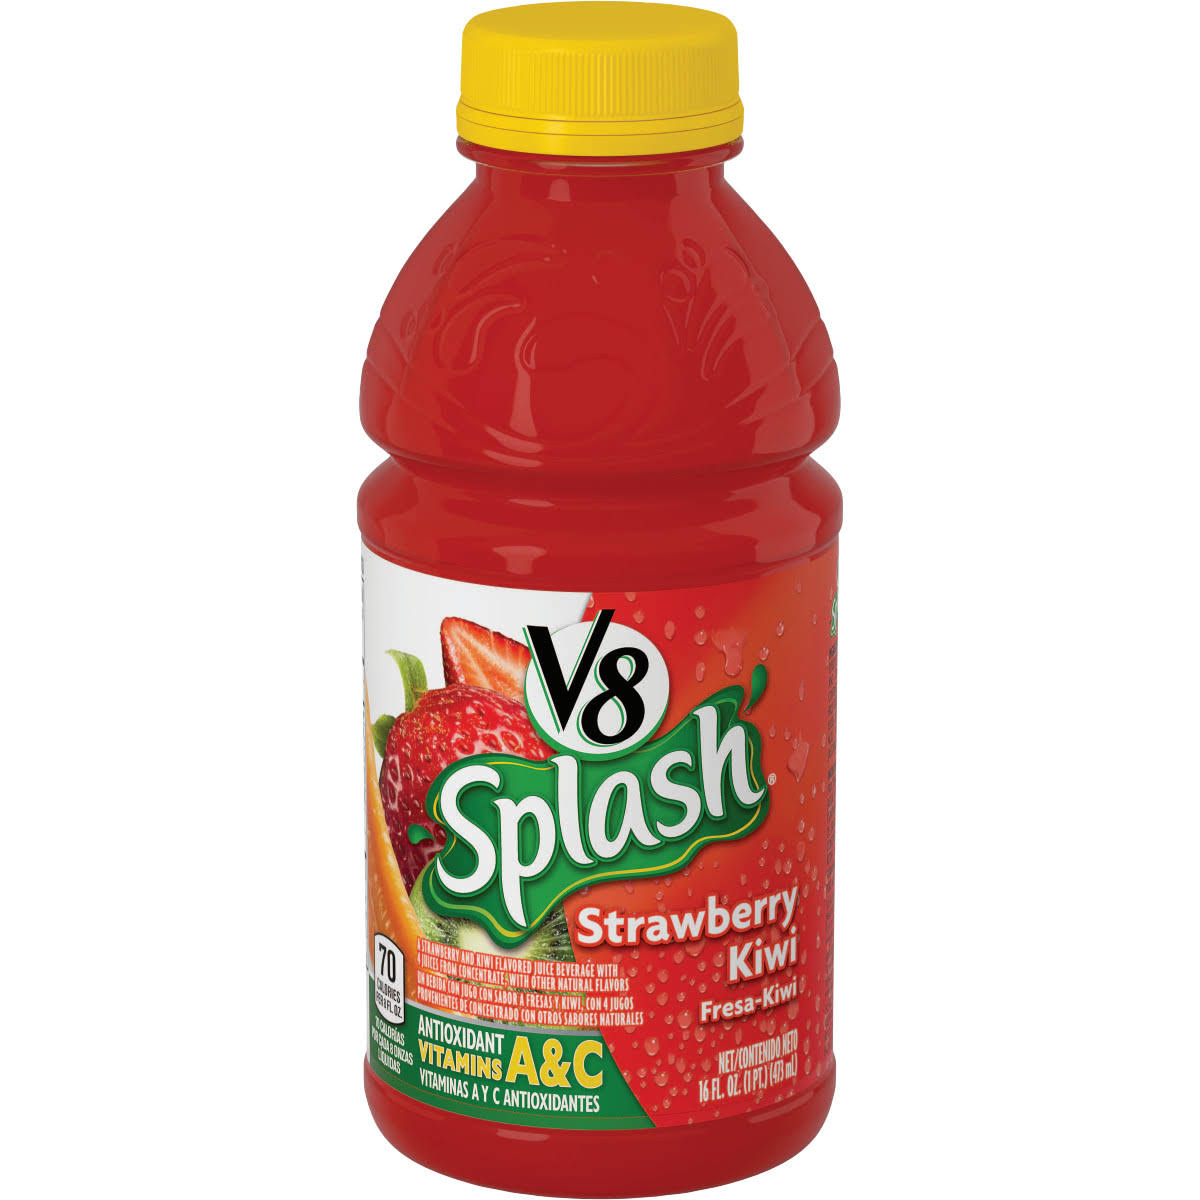 V8 Splash Juice Drink - Strawberry Kiwi, 16 Oz